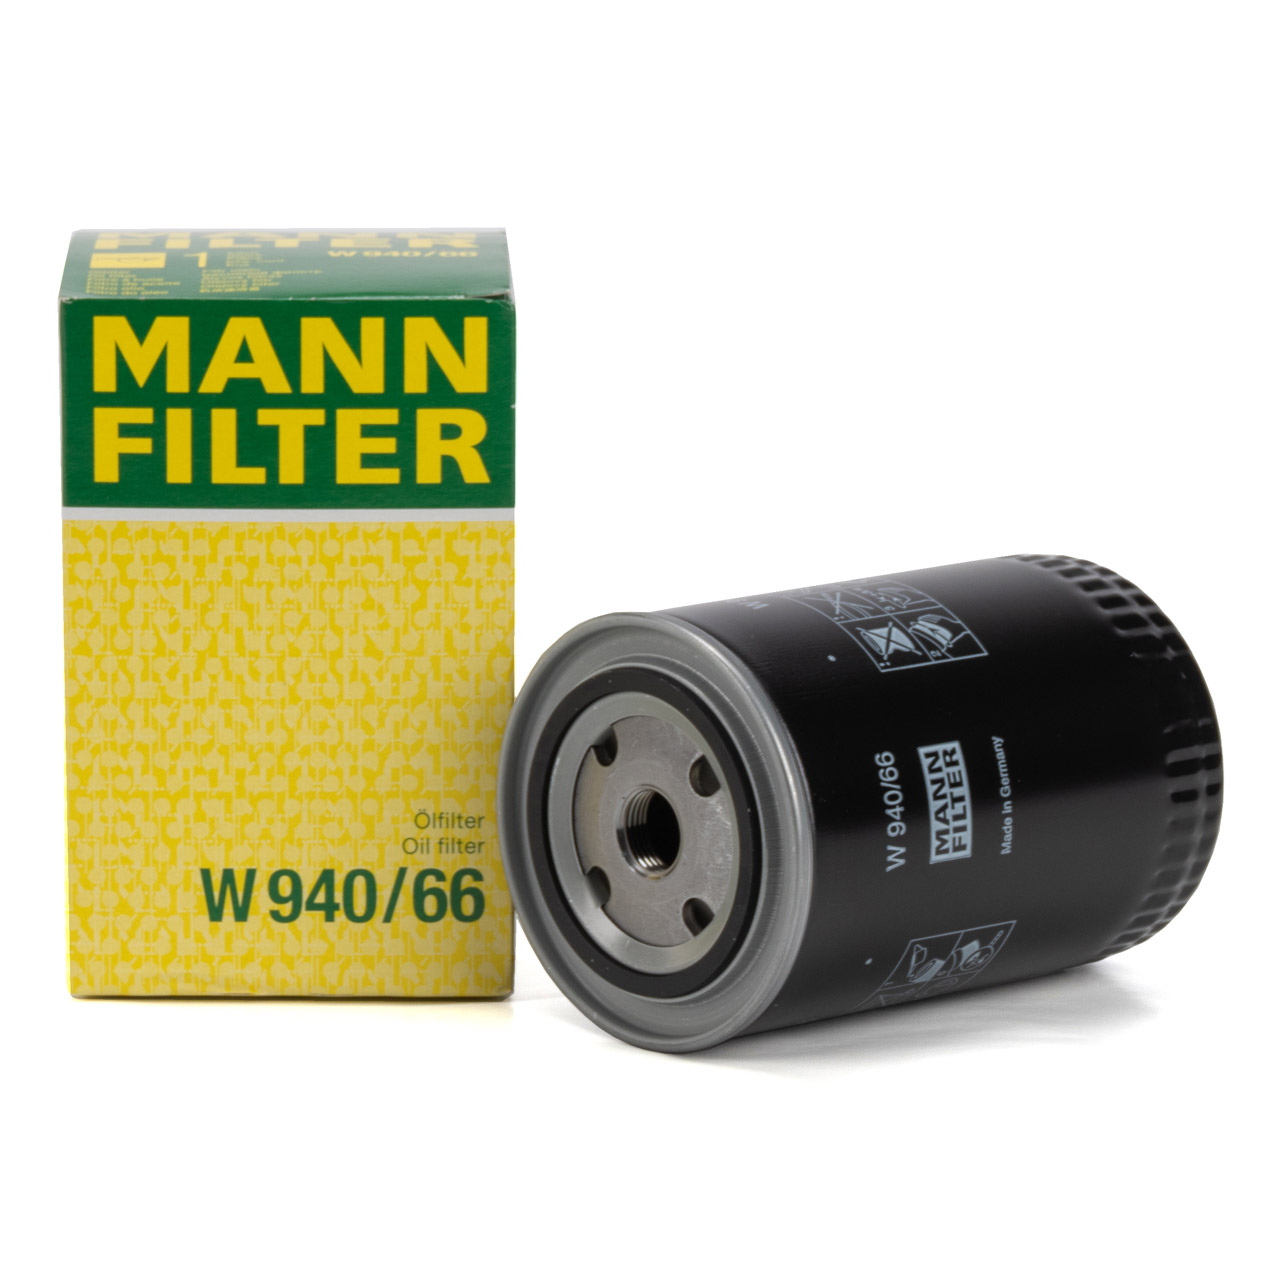 MANN-FILTER Ölfilter - W 940/66 